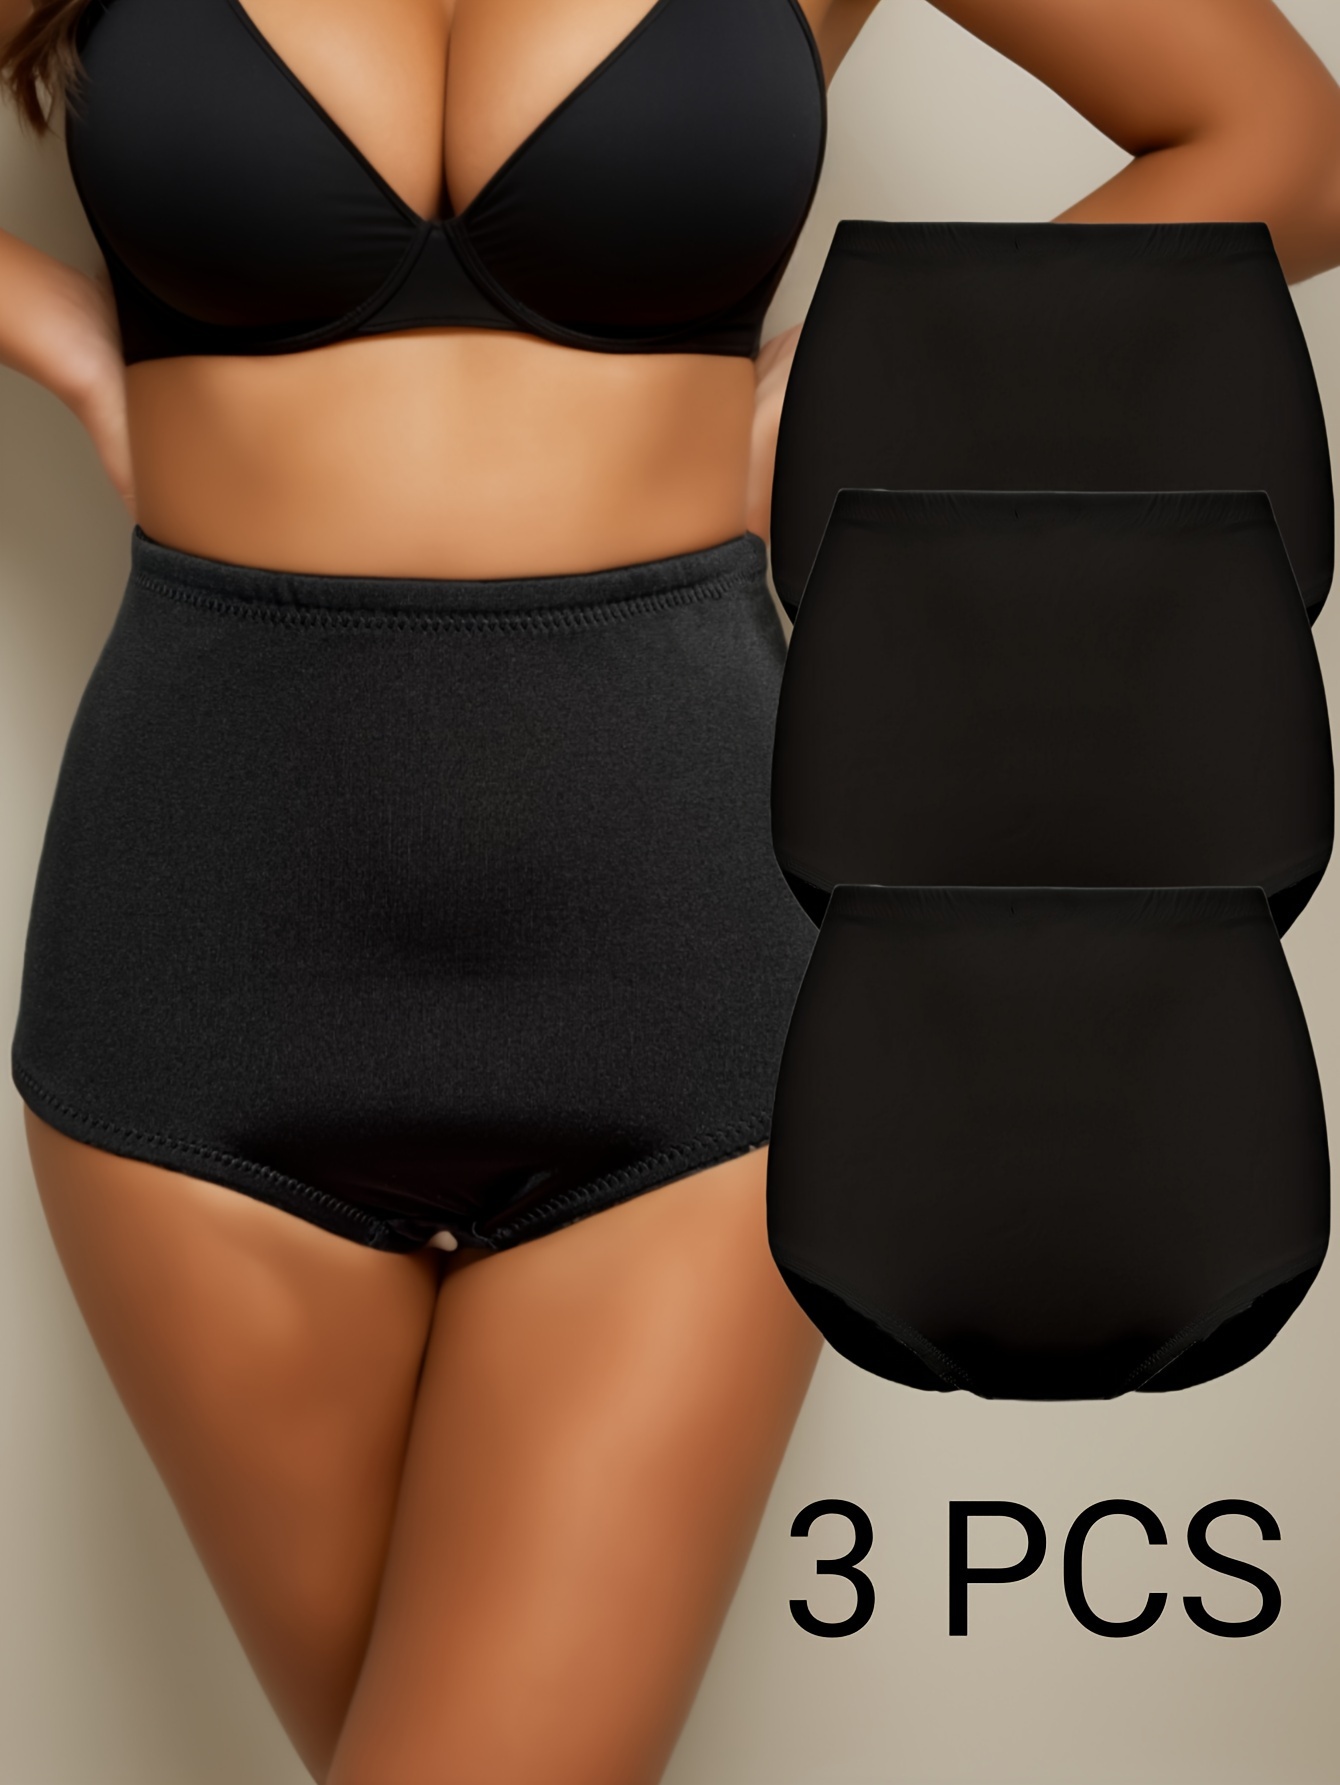 1 Pc Sexy Panties, Lace Scallop Trim Plain Black Bow Decor Low Waist Soft &  Comfy Intimates Briefs, Women's Lingerie & Underwear